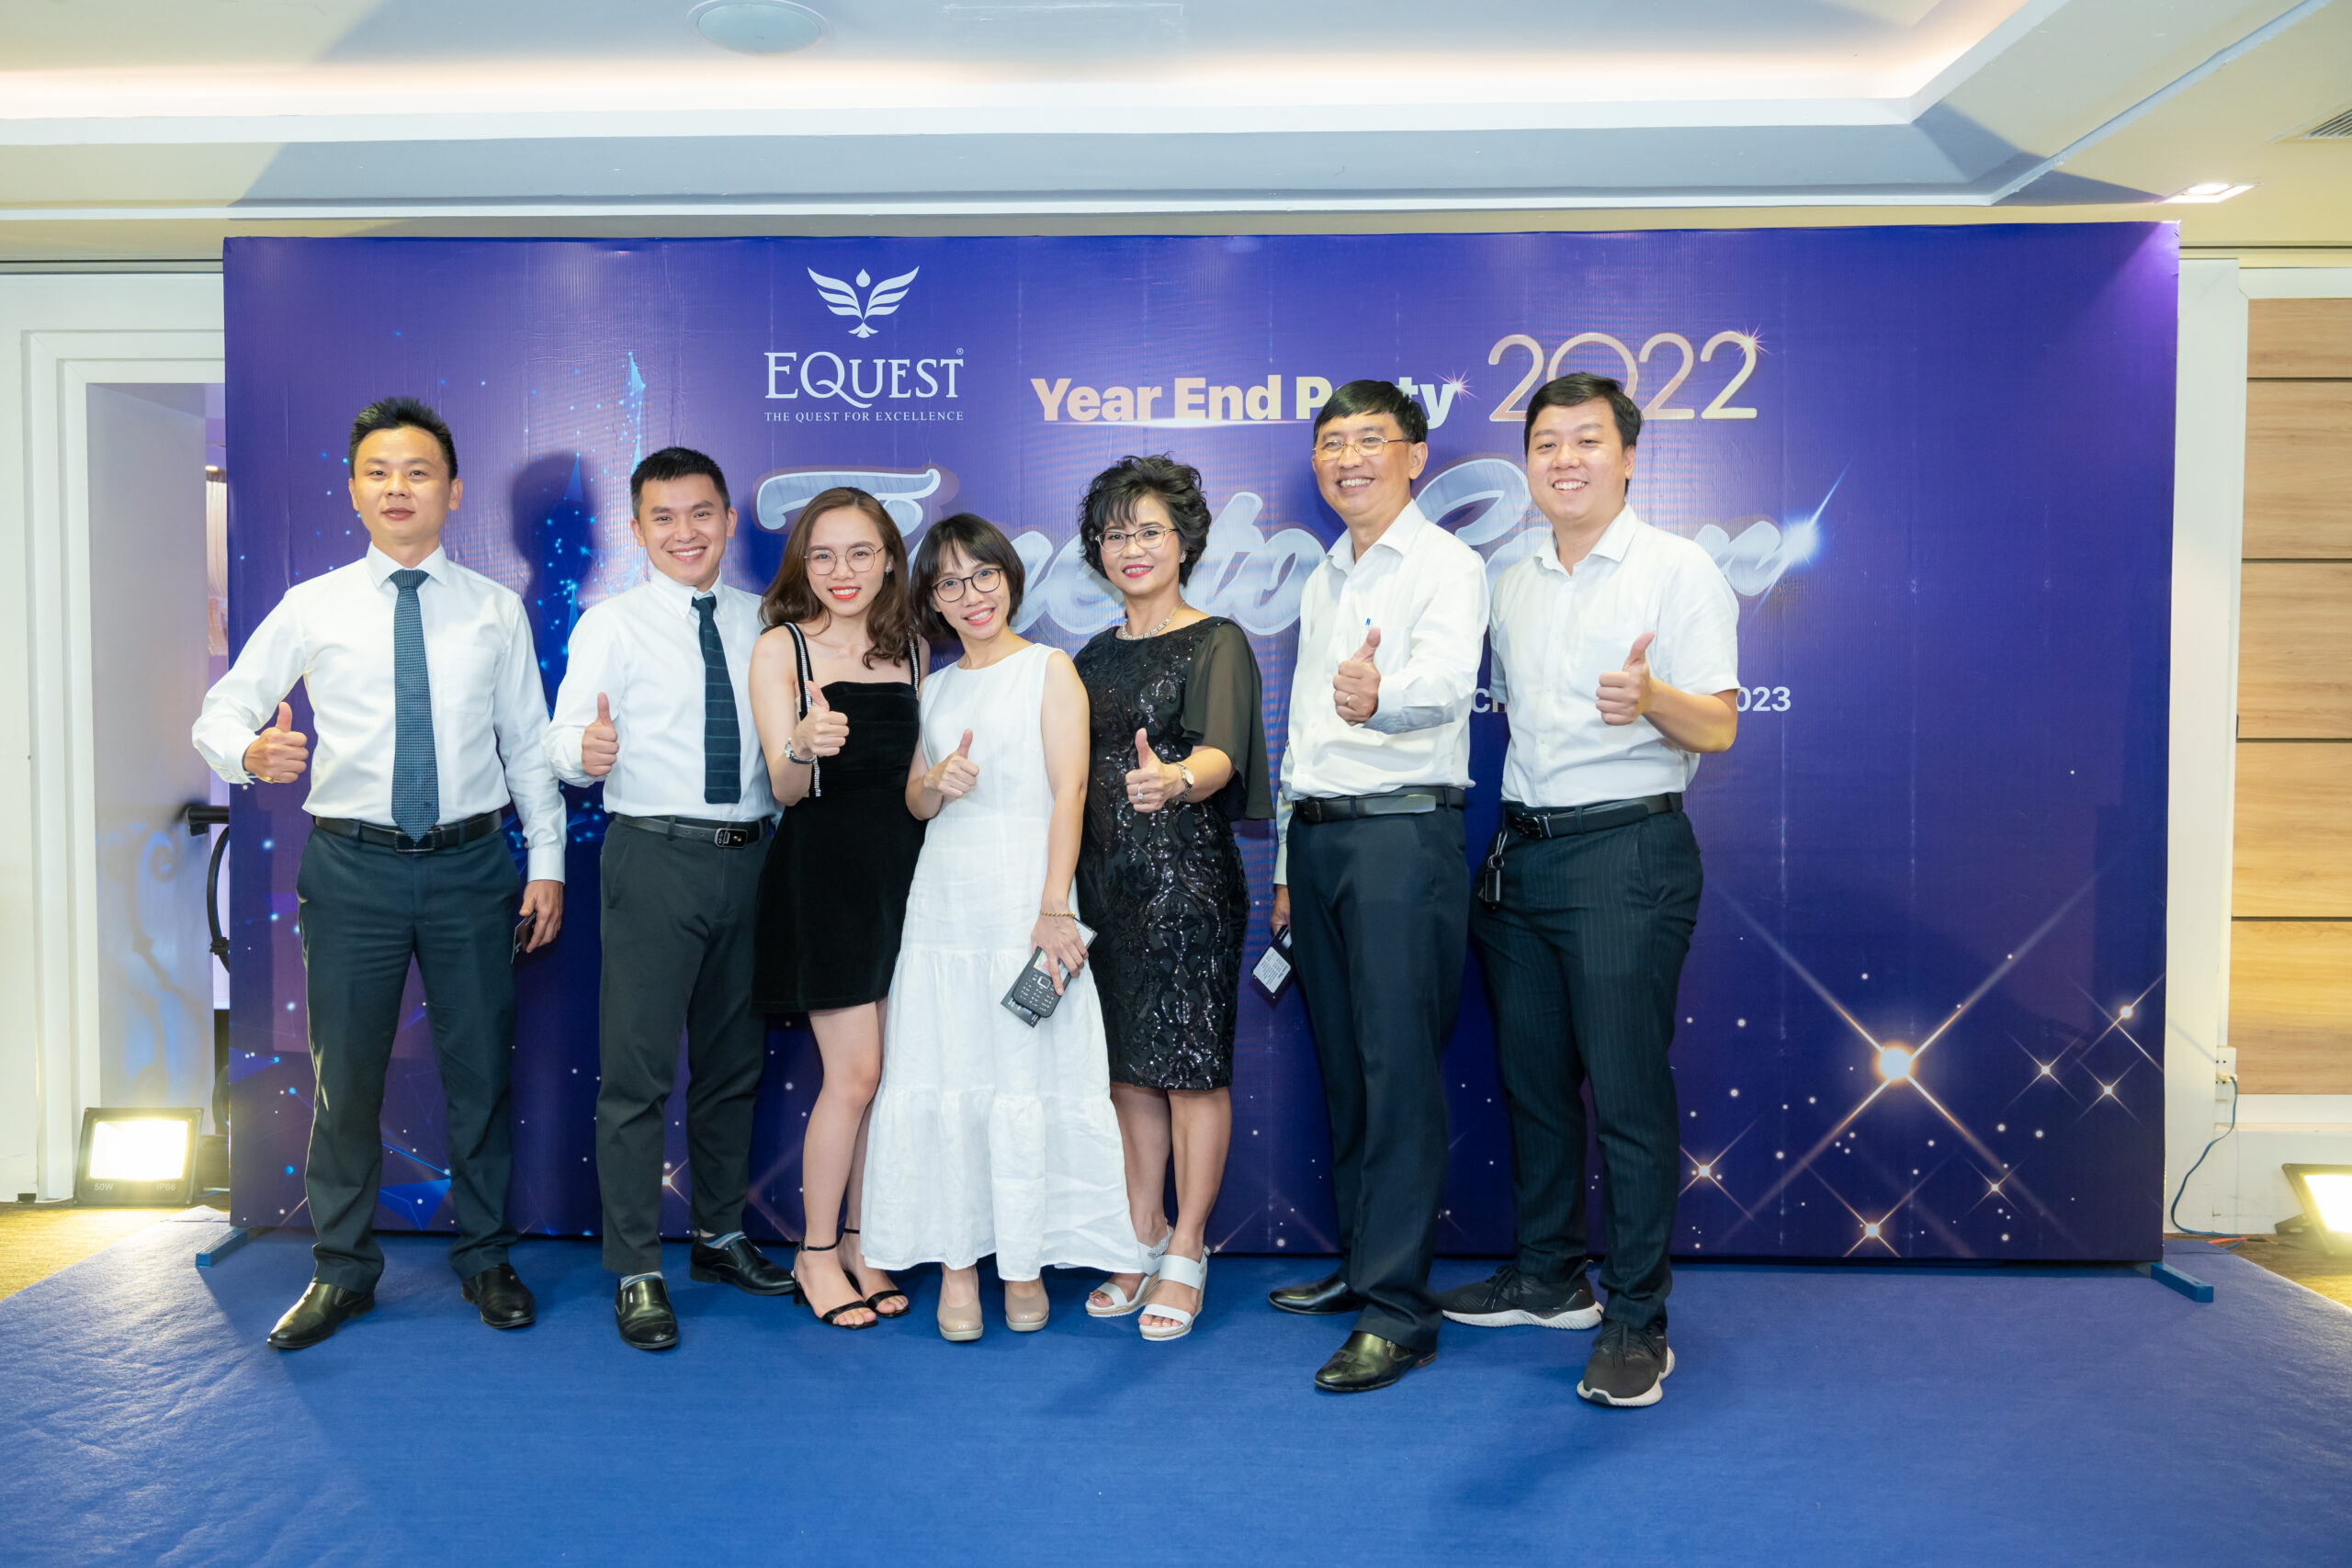 EQuest là một trong những tổ chức giáo dục tư nhân lớn nhất ở Việt Nam